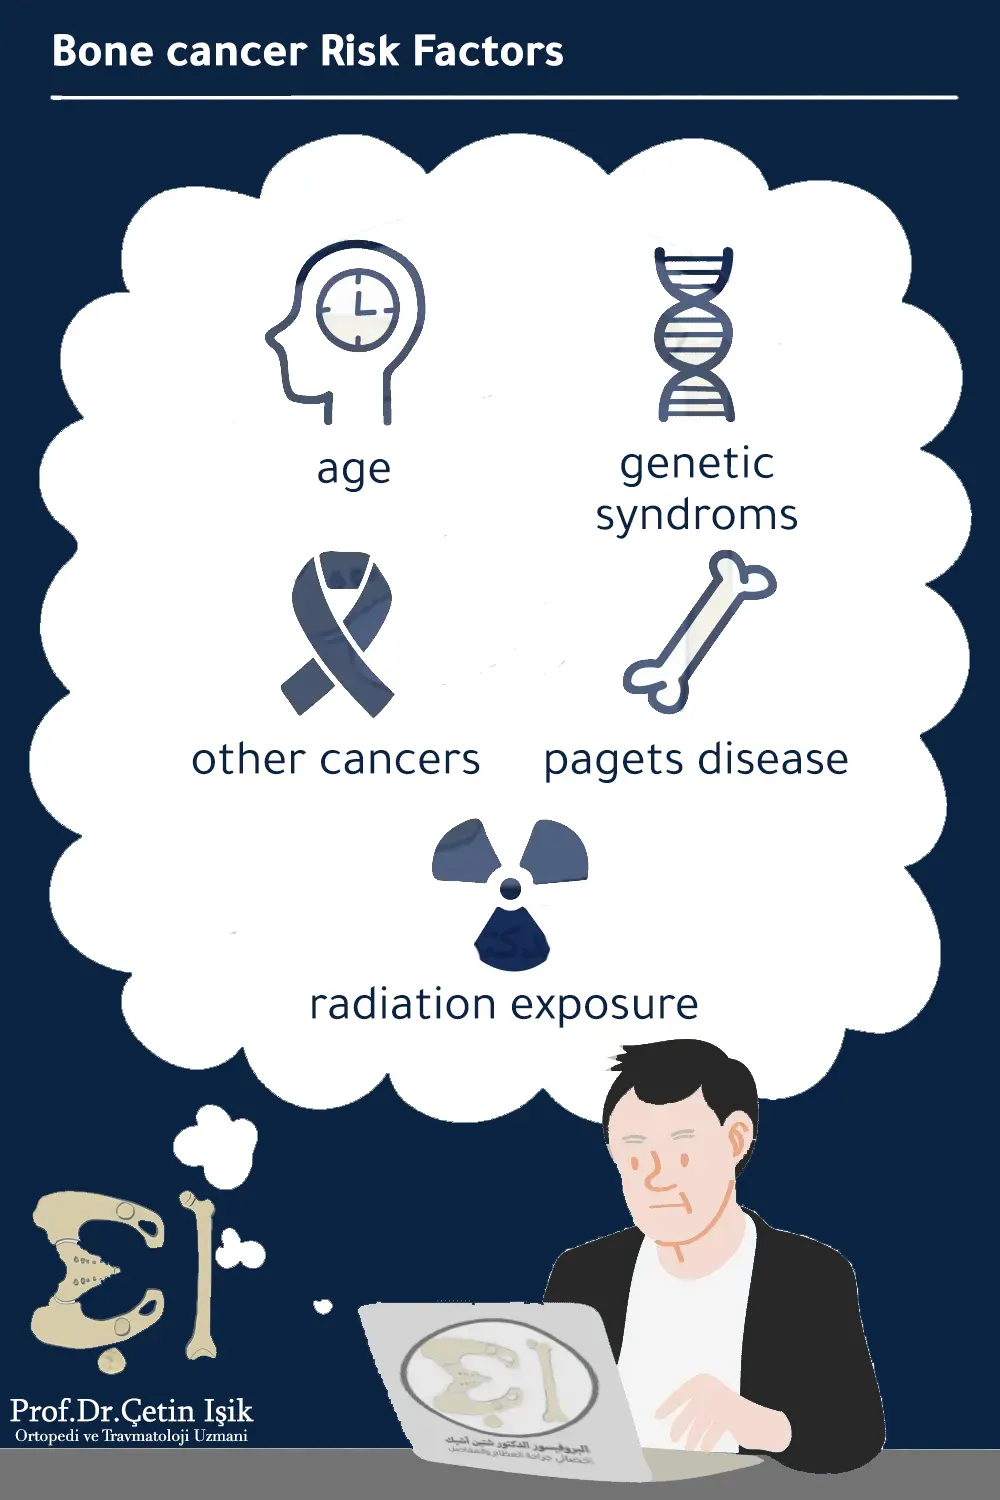 Bone cancer risk factors